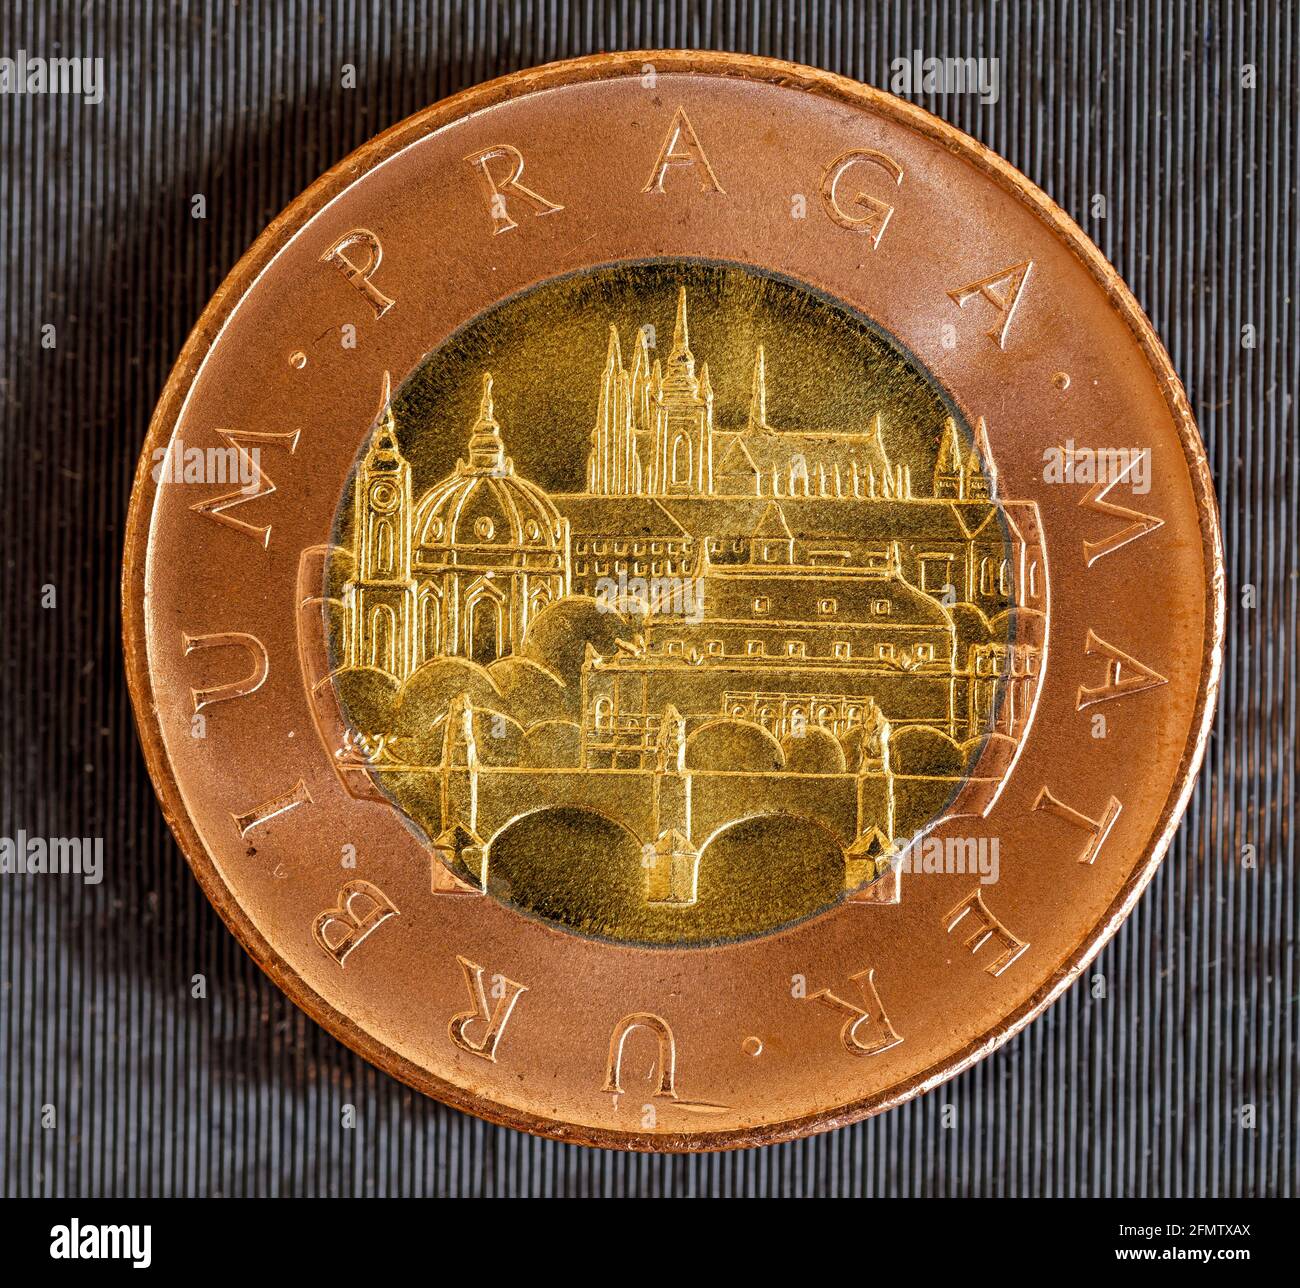 Speichern Download Preview Tschechische Republik Währung 50 kc-Münze (CZK oder 'Krone') isoliert auf schwarzem Hintergrund. Vorderseite Stockfoto